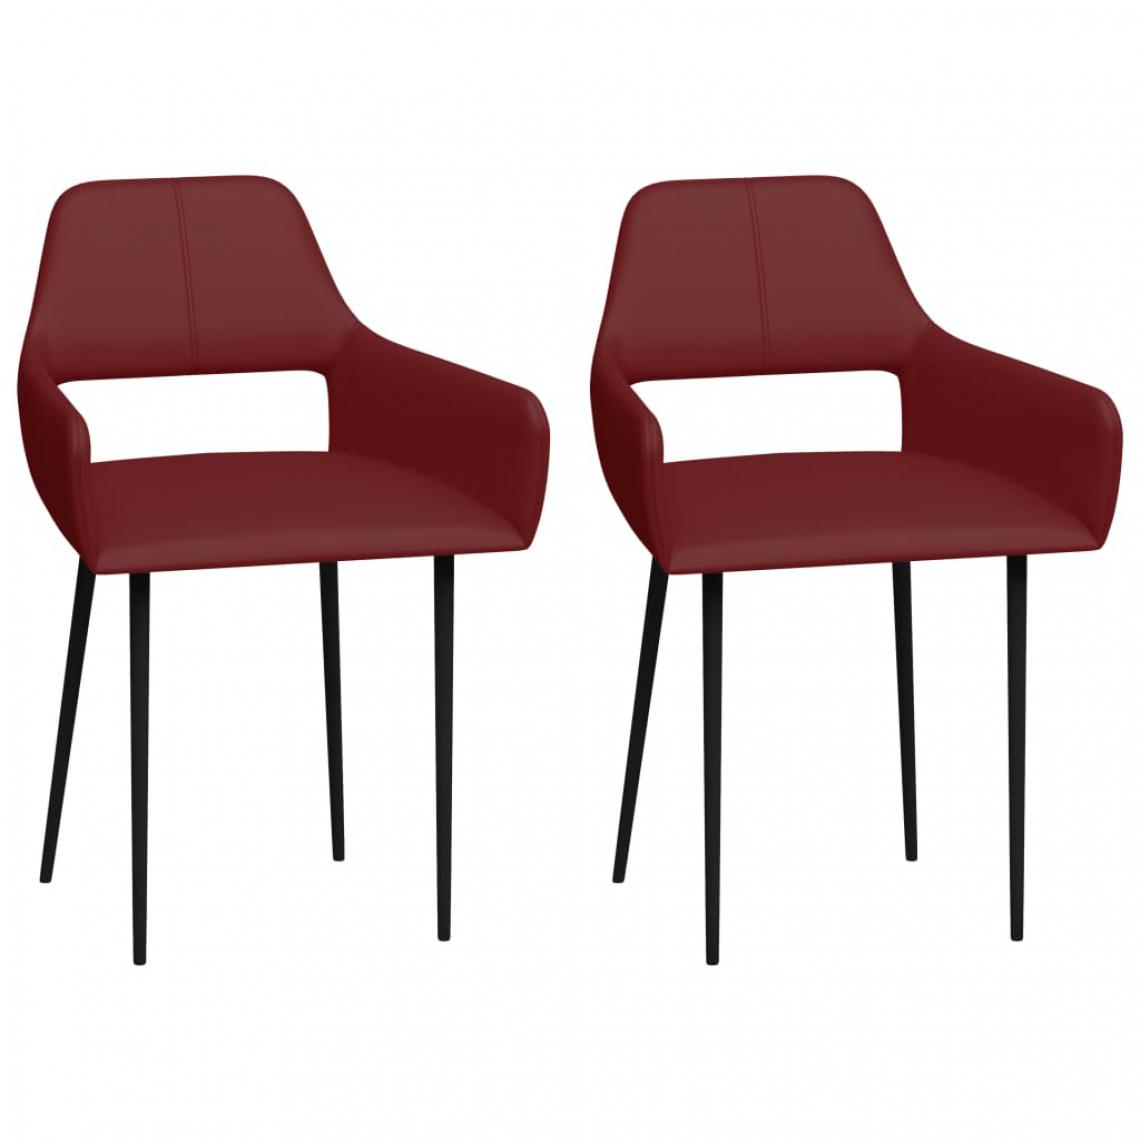 Icaverne - Contemporain Fauteuils et chaises gamme Belgrade Chaises de salle à manger 2 pcs Rouge bordeaux Similicuir - Chaises